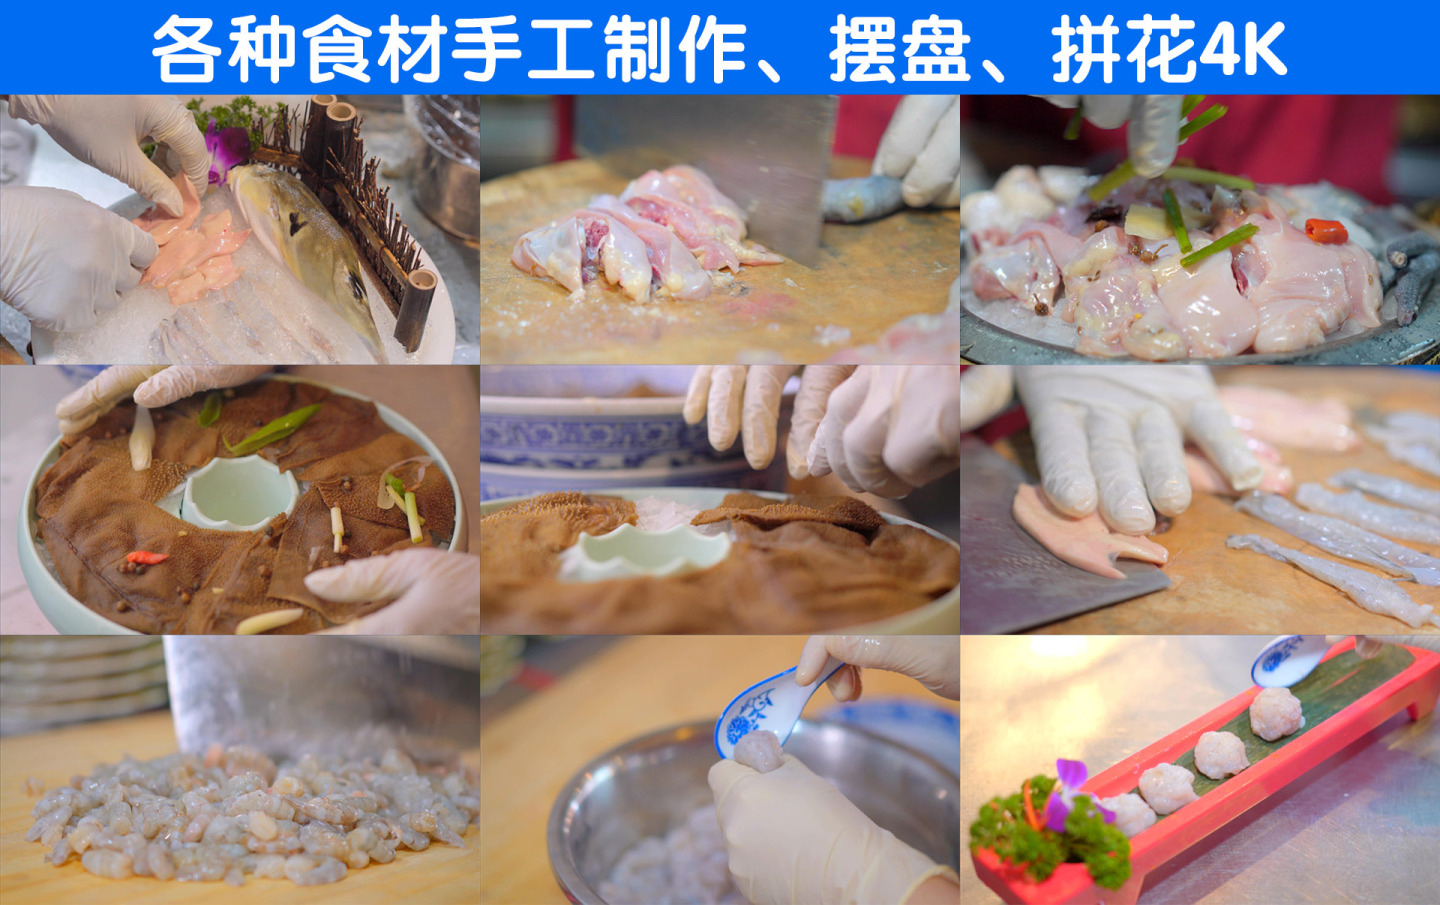 火锅海鲜肉食配菜摆盘4K